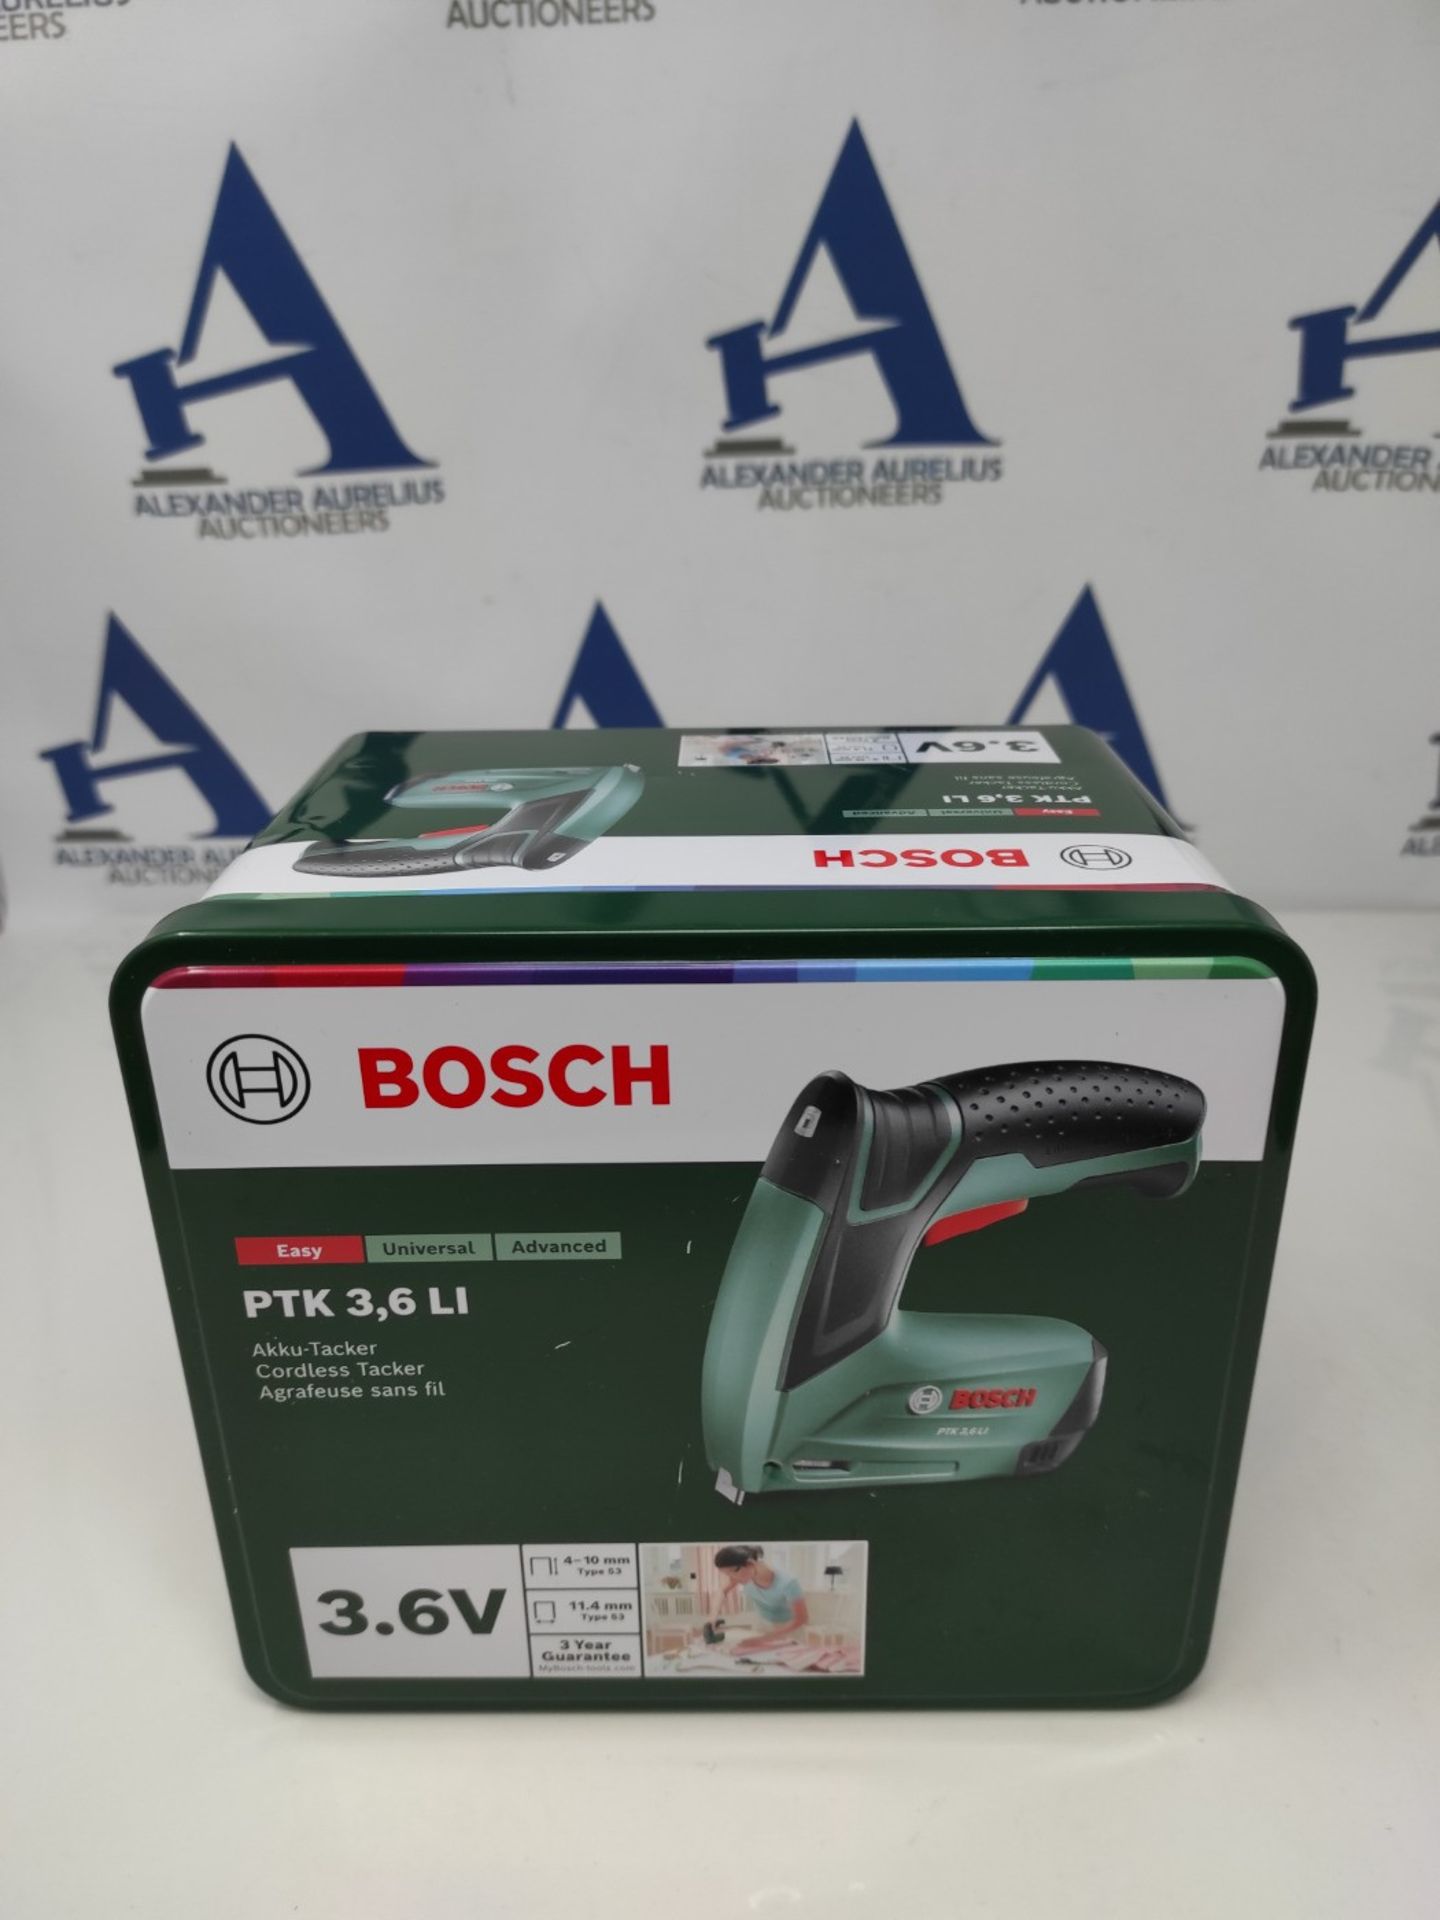 RRP £73.00 Bosch Home and Garden Cordless Stapler - PTK 3.6 LI (integrated battery, 3.6 V, 30 imp - Bild 2 aus 3